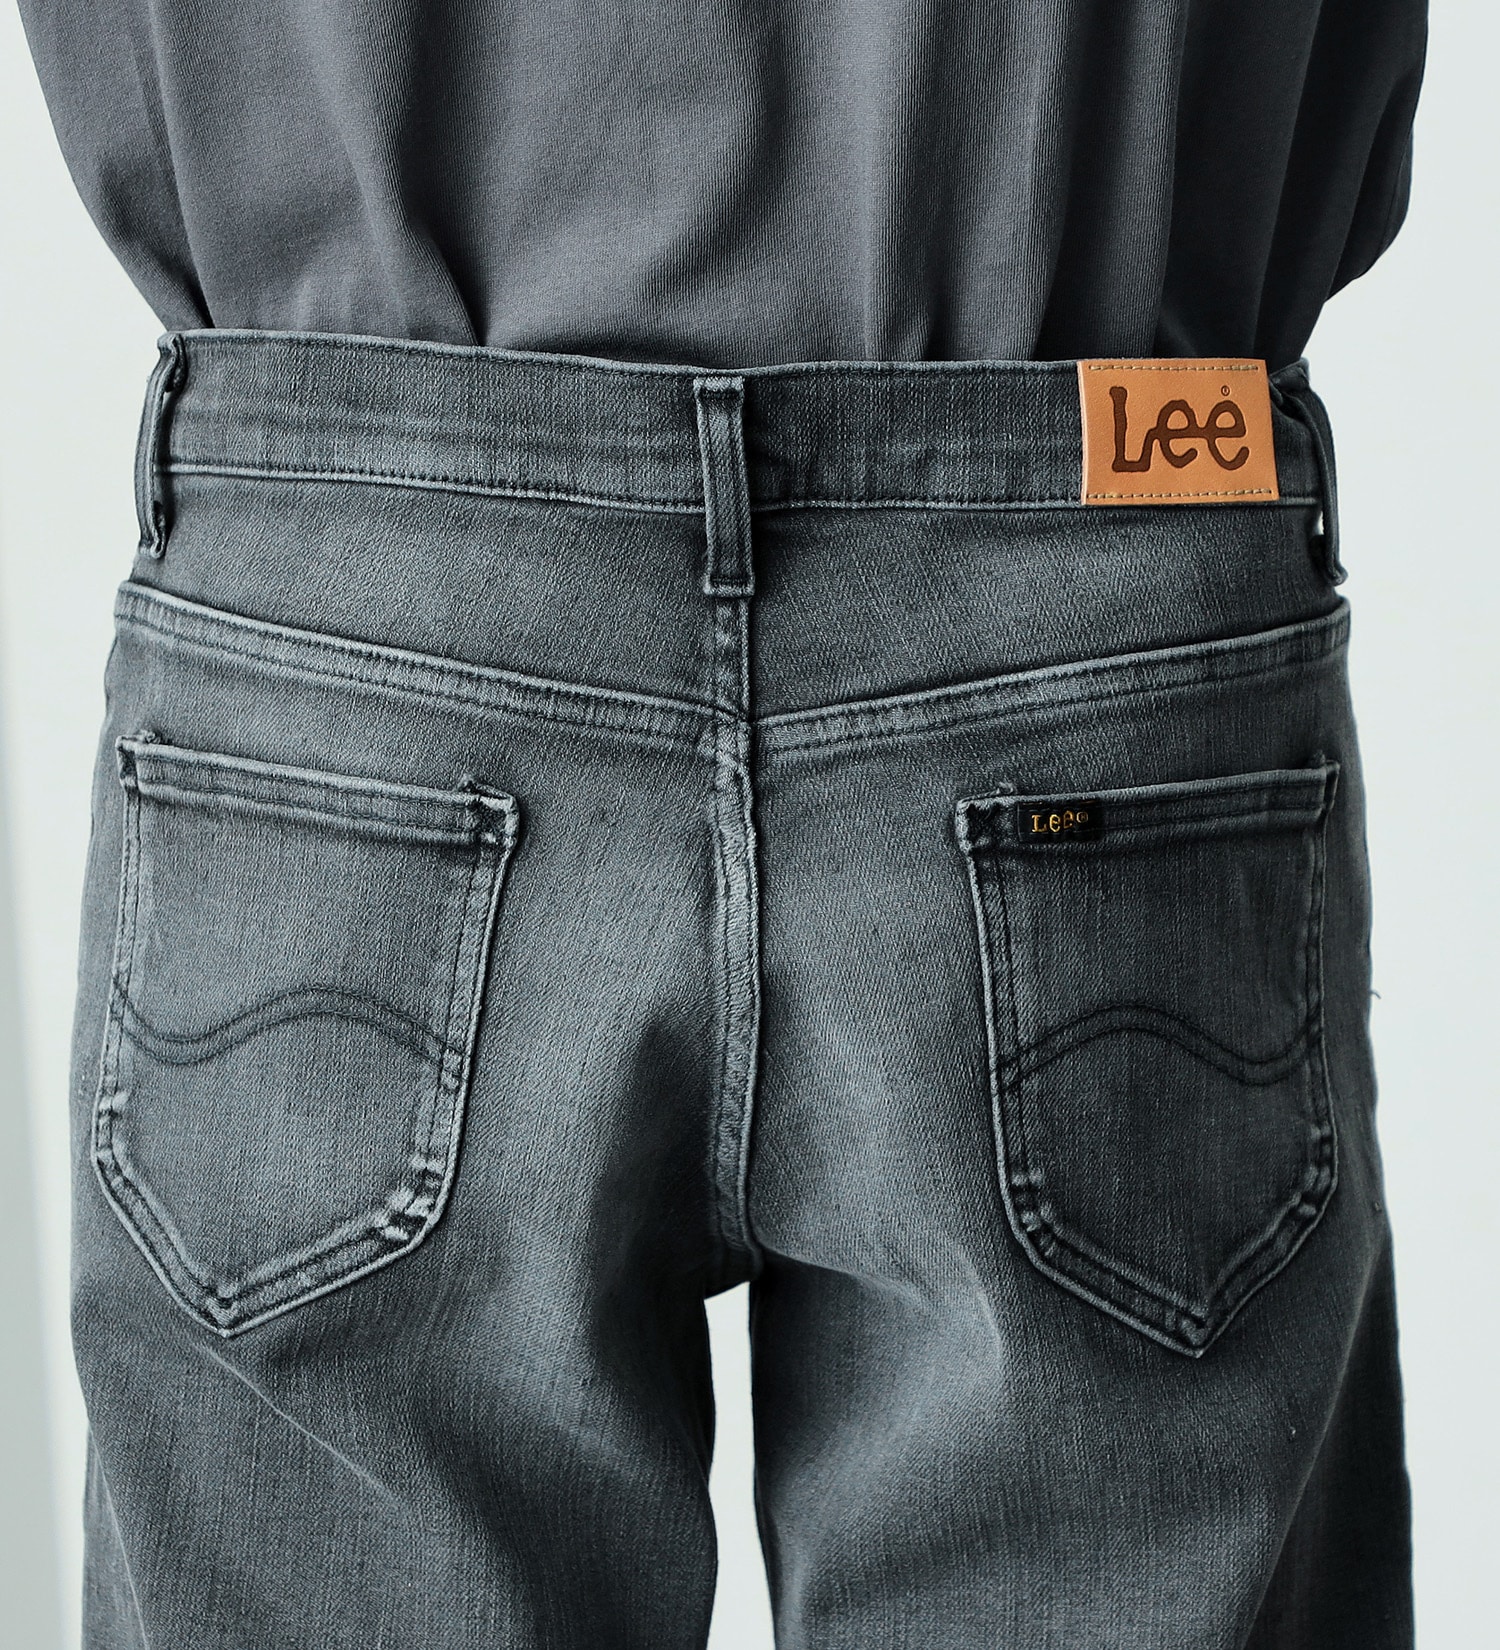 Lee(リー)の【超快適ストレッチ】キャロット スキニーパンツ|パンツ/デニムパンツ/メンズ|ブラックデニム